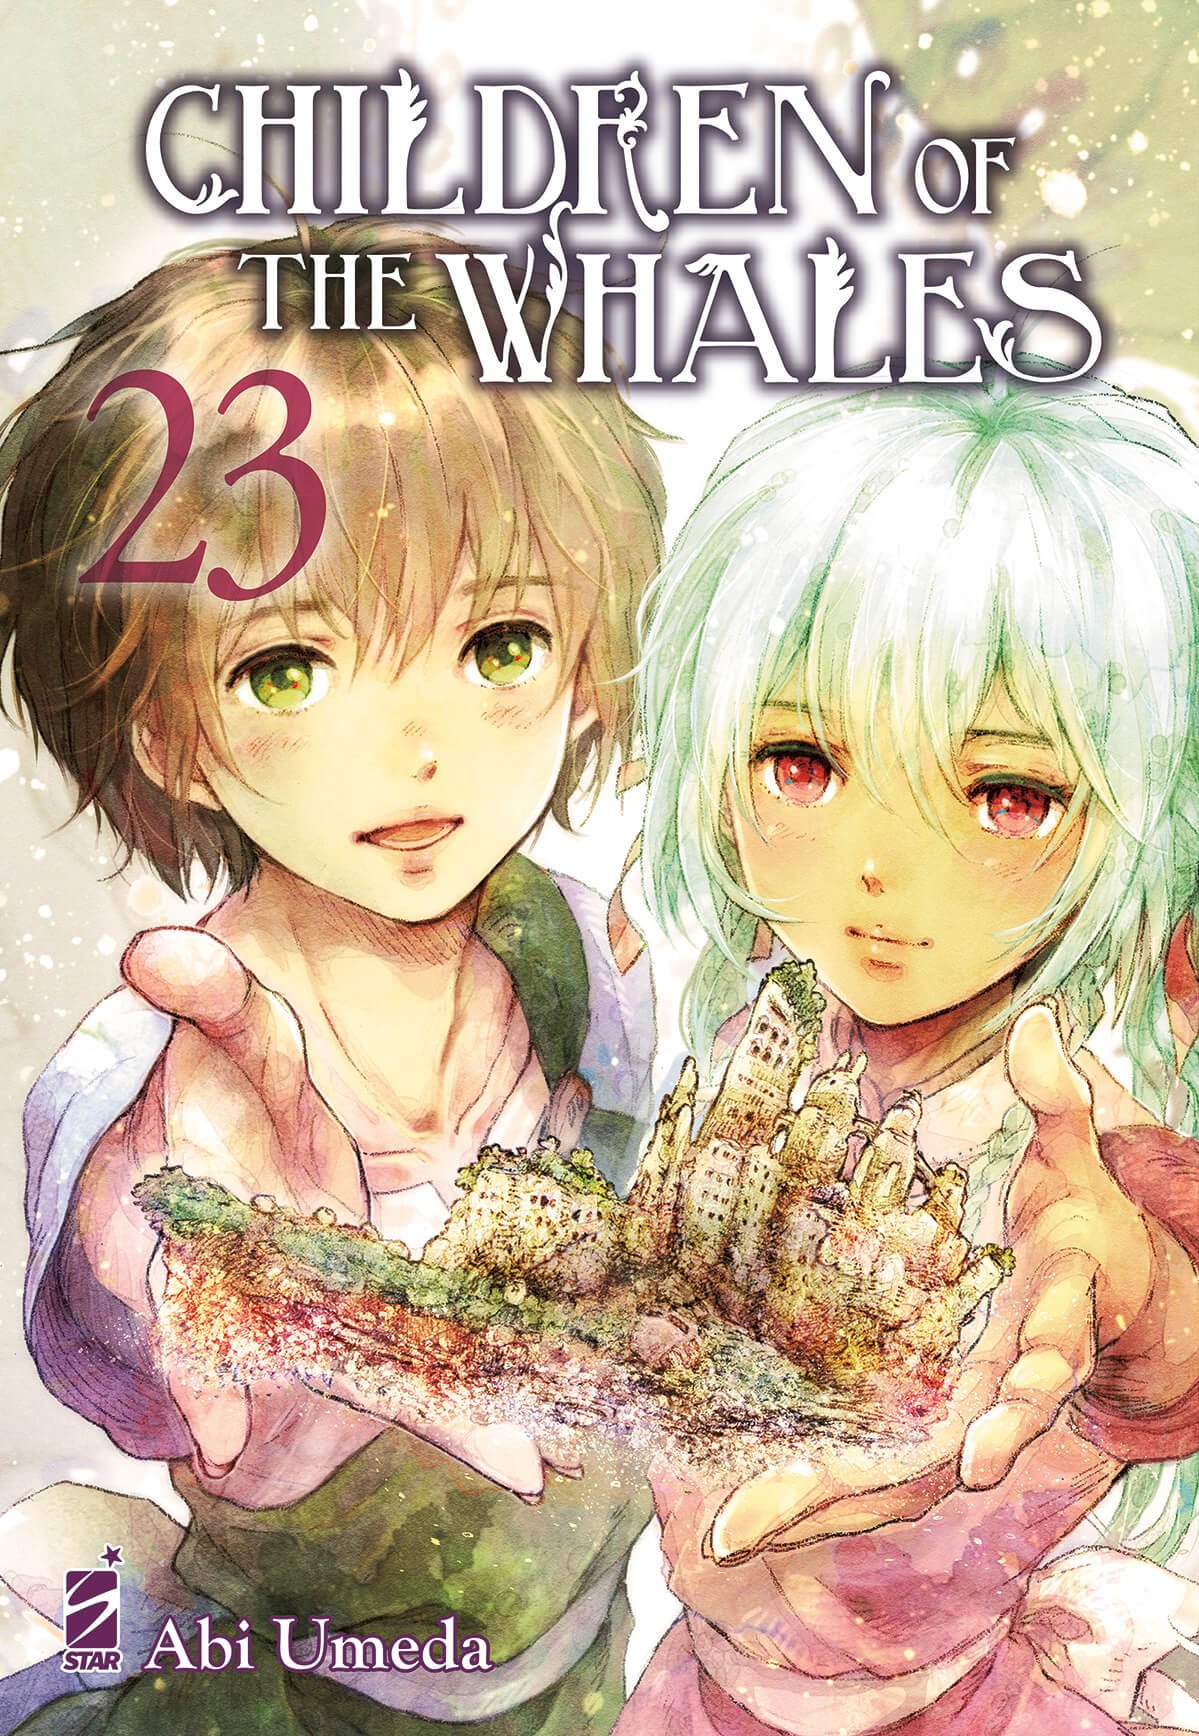 Children of The Wales 23, parmi les sorties mangas de Star Comics du 15 novembre 2023.